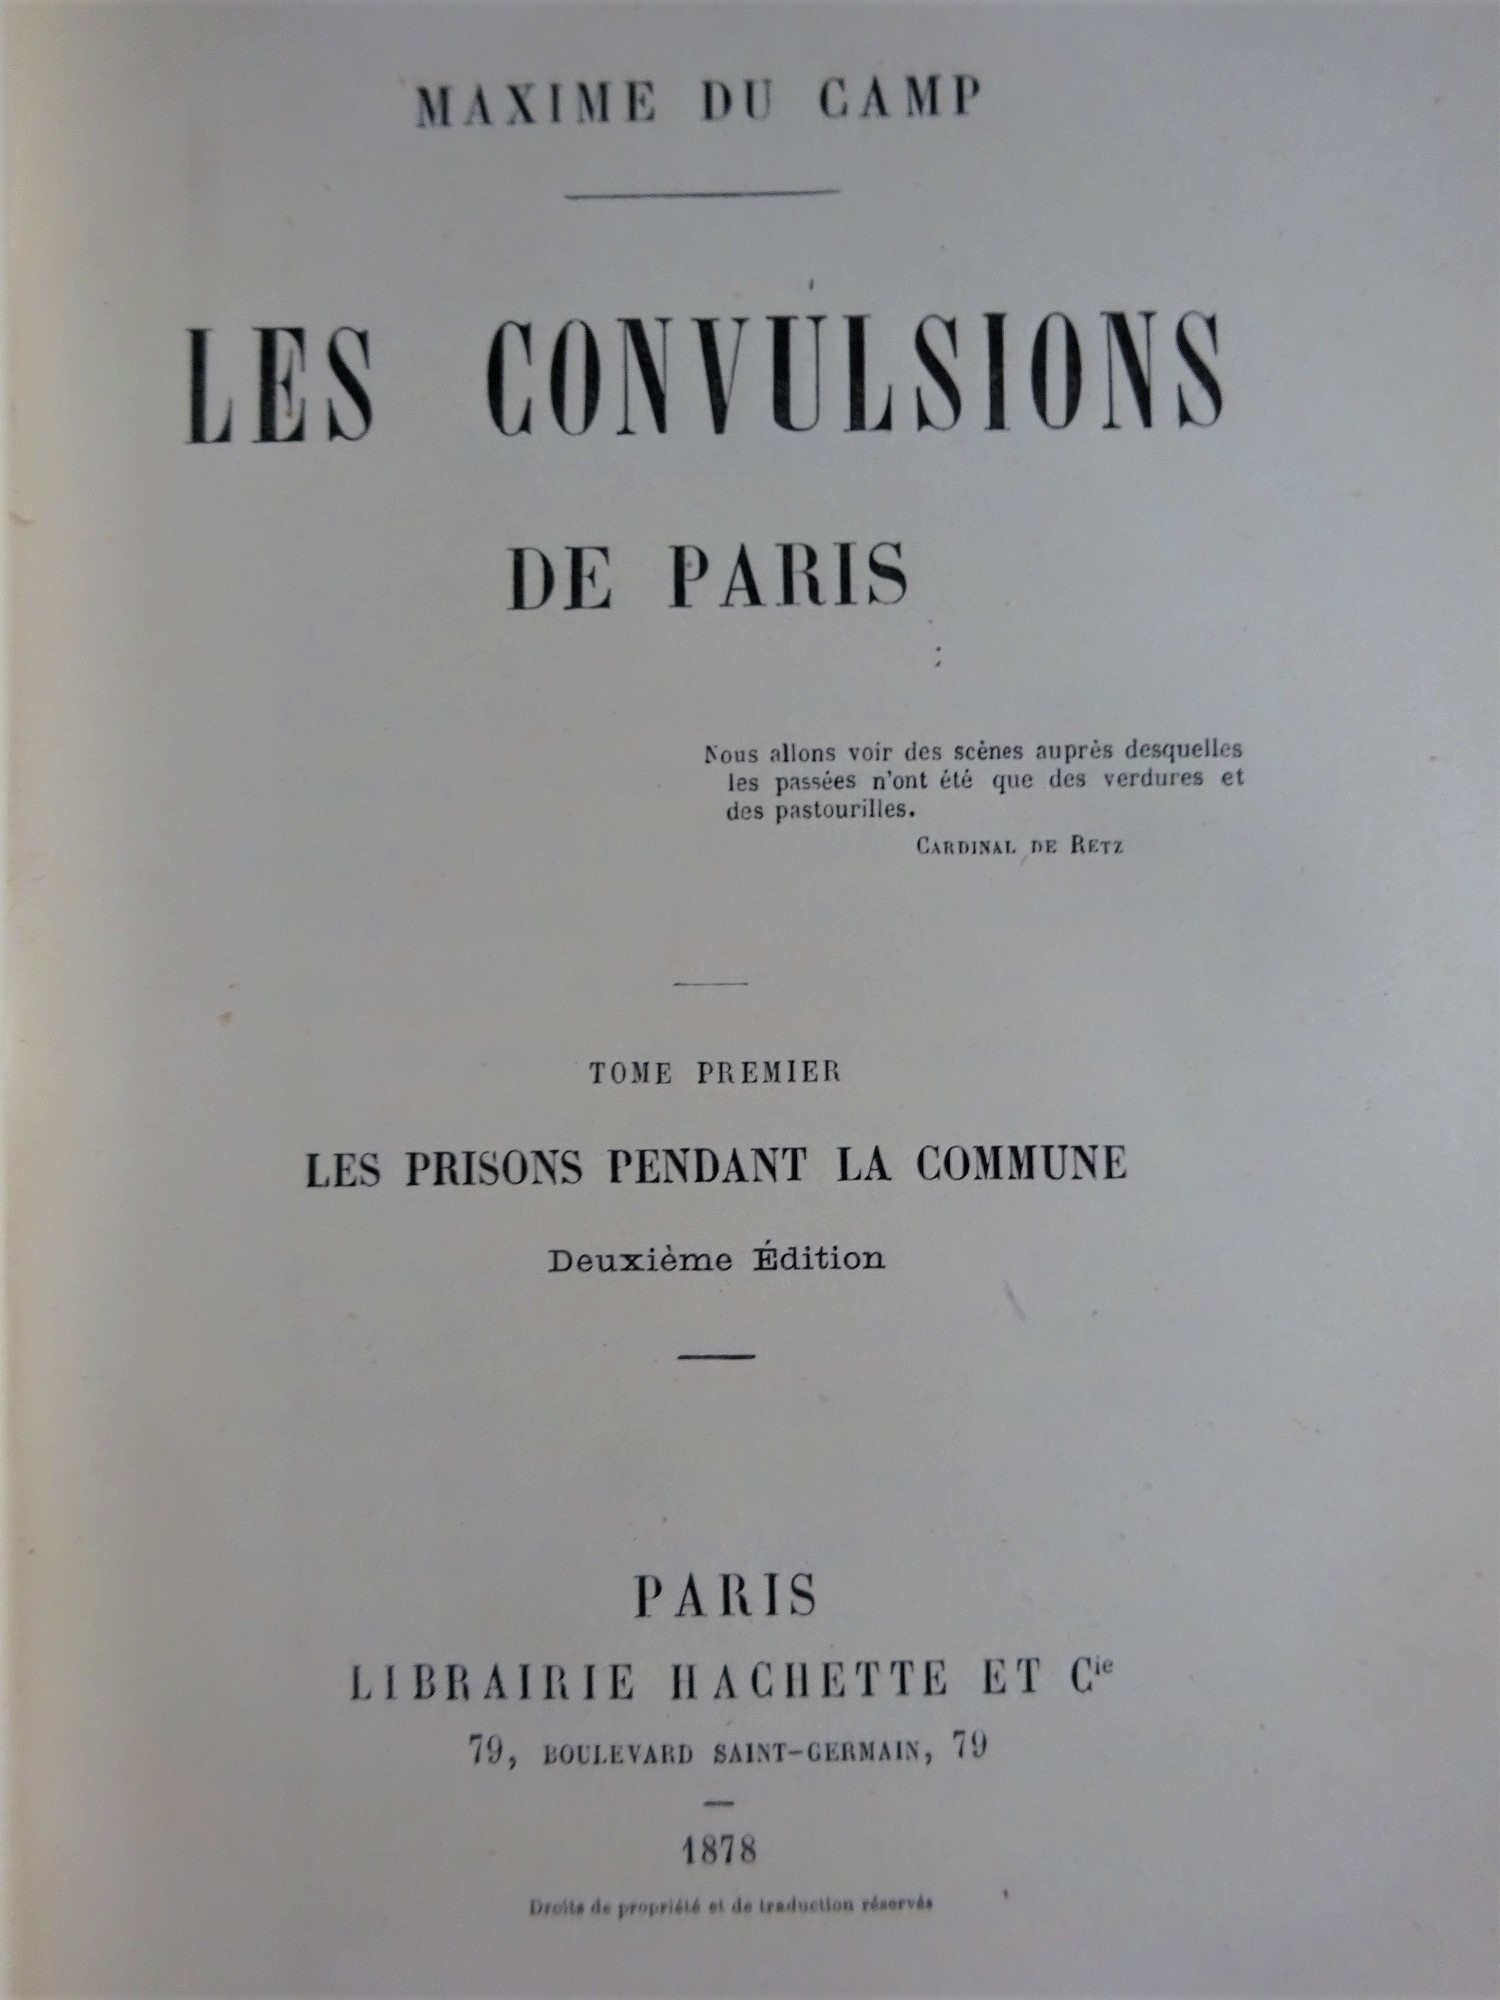 Les convulsions de Paris